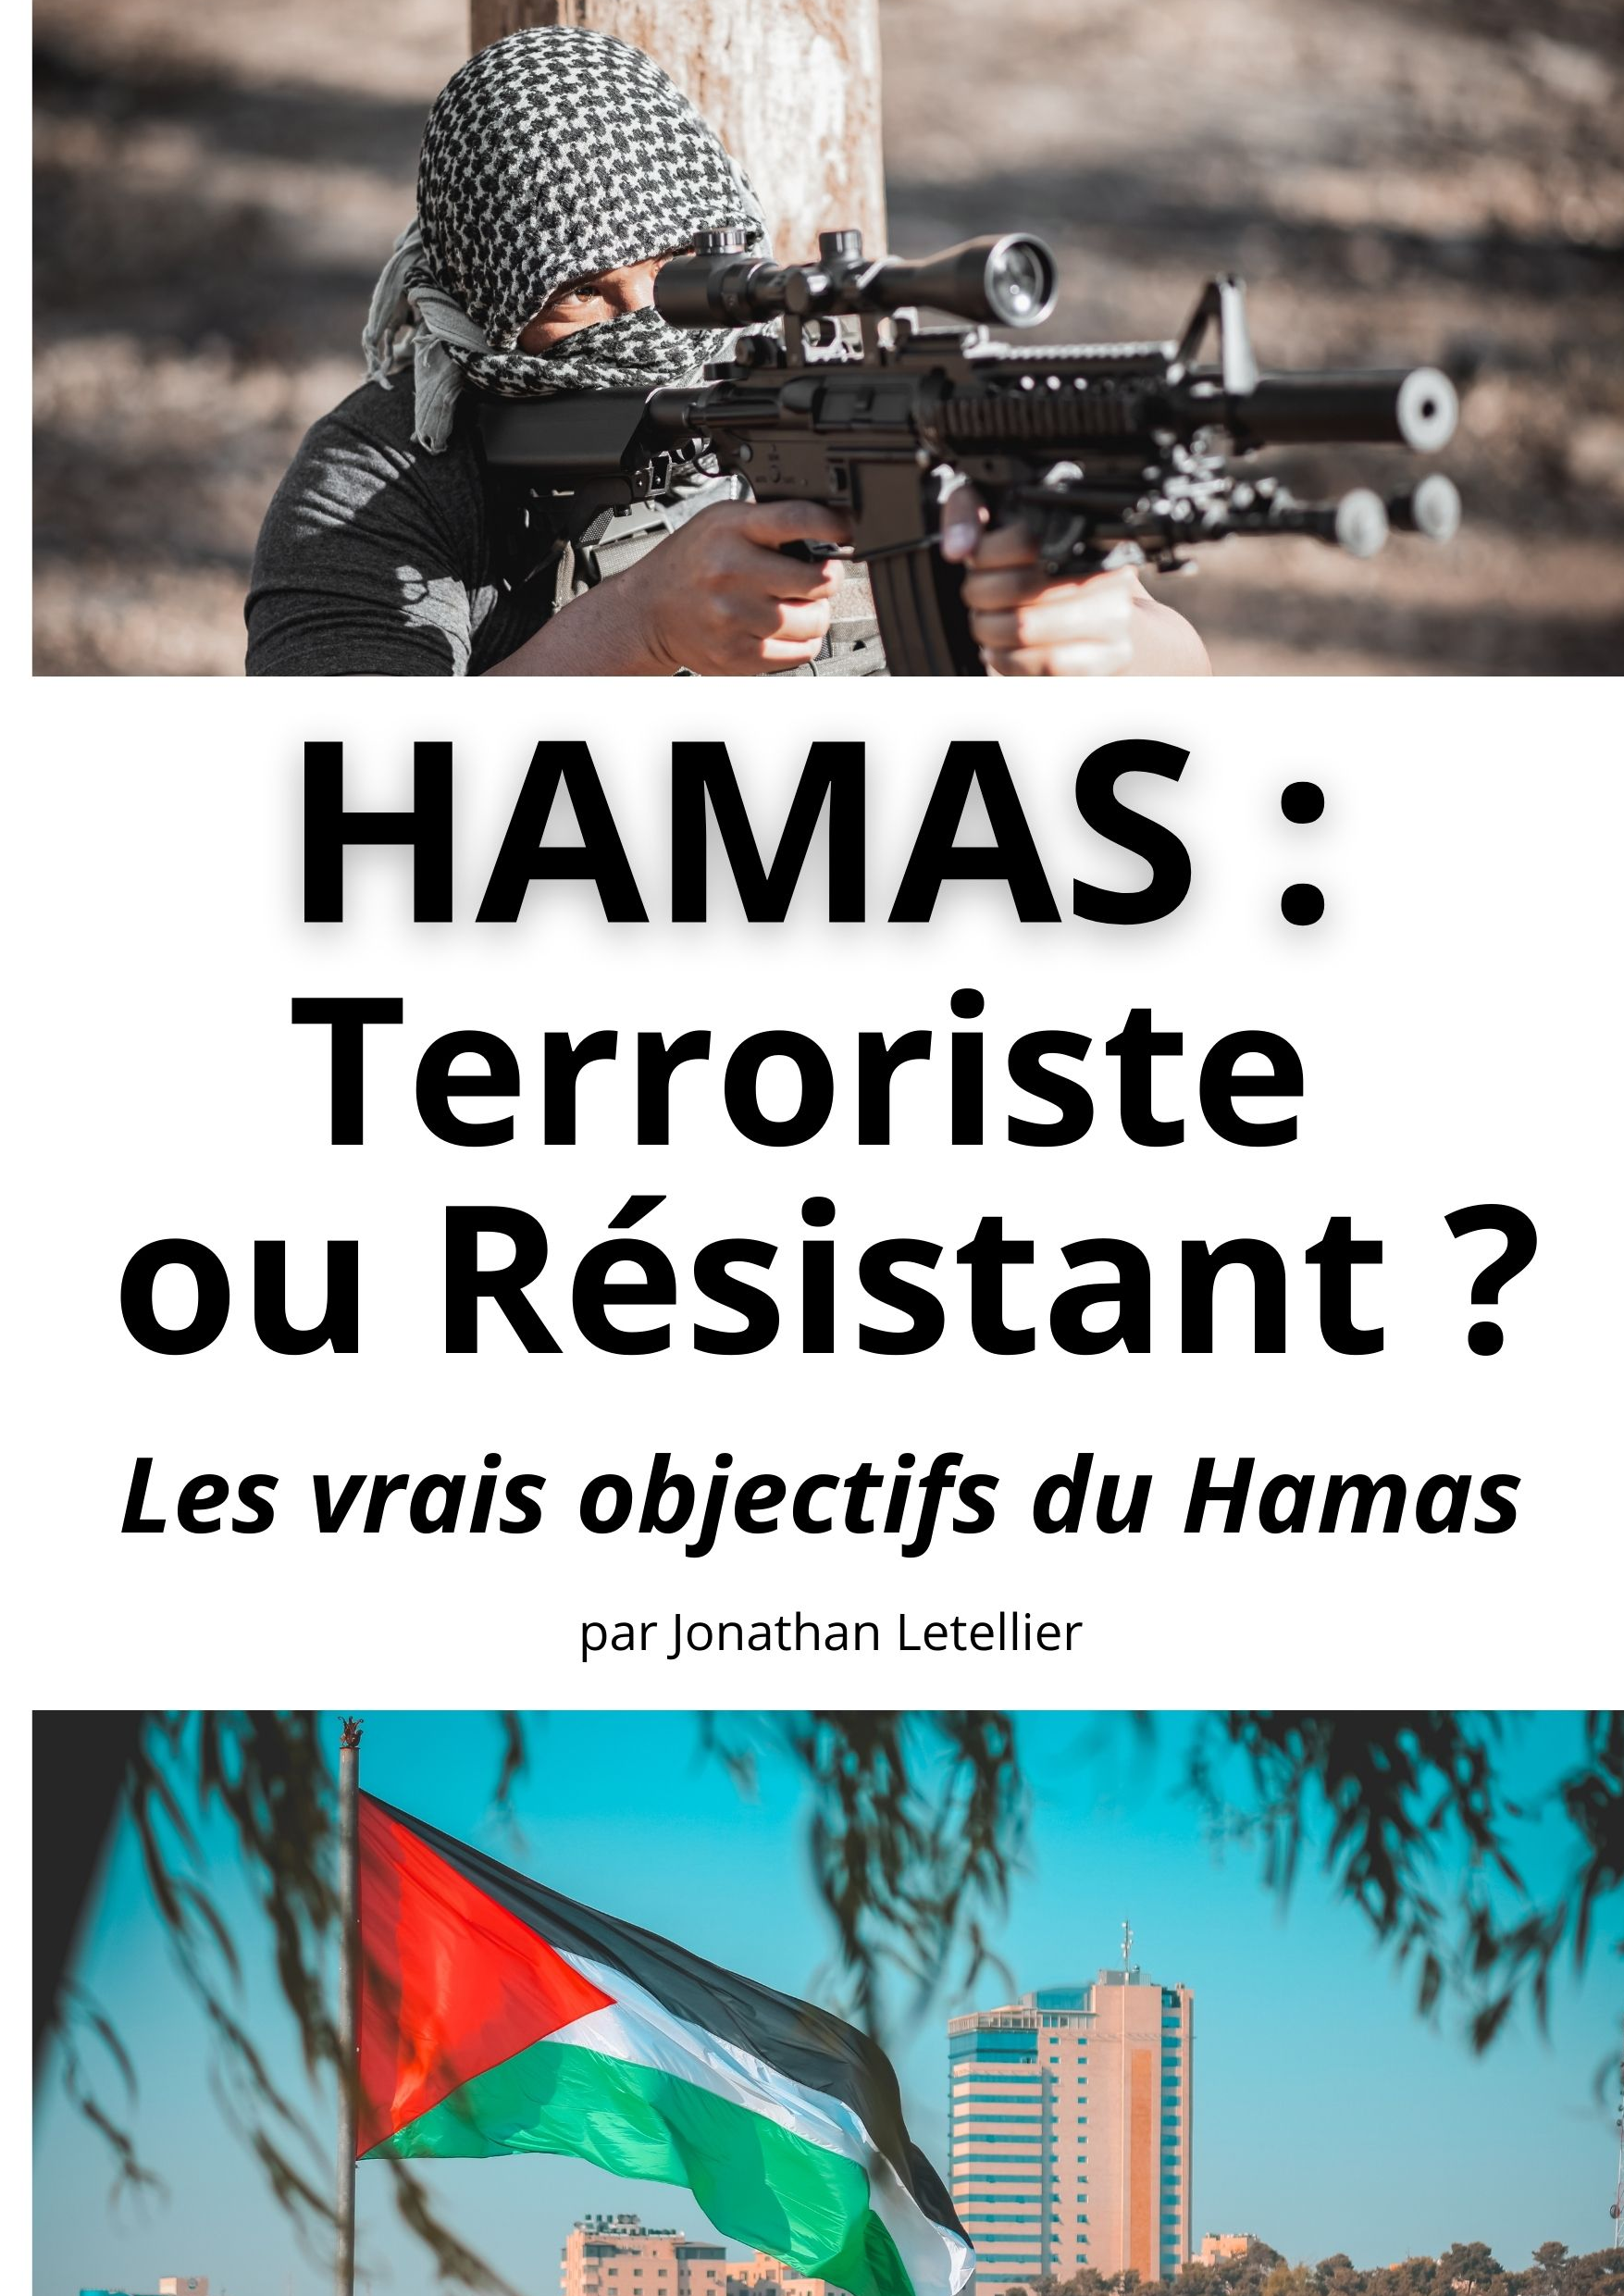 HAMAS: Terroriste ou Résistant?